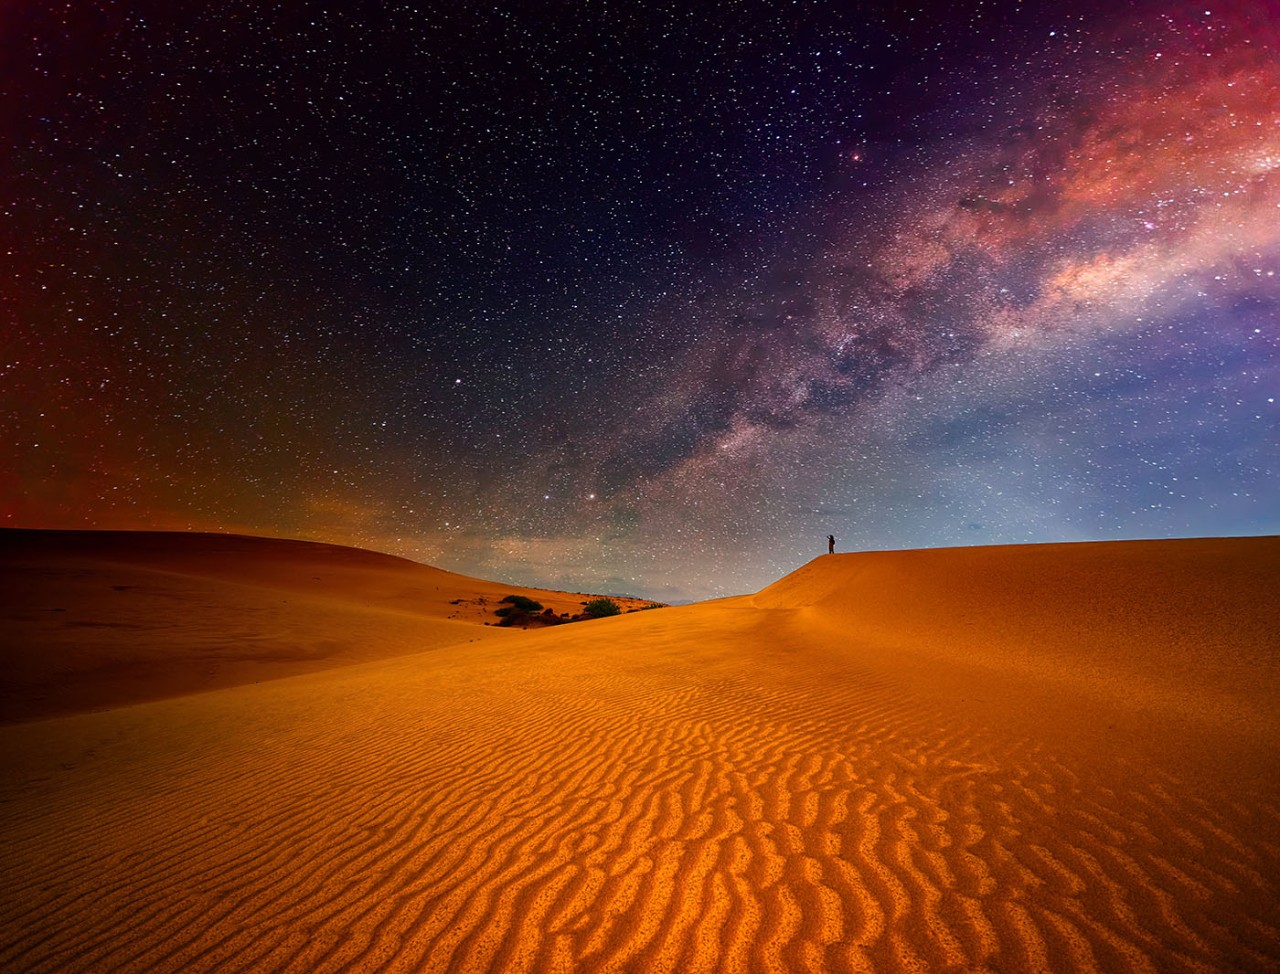 Stars light up the desert night sky.